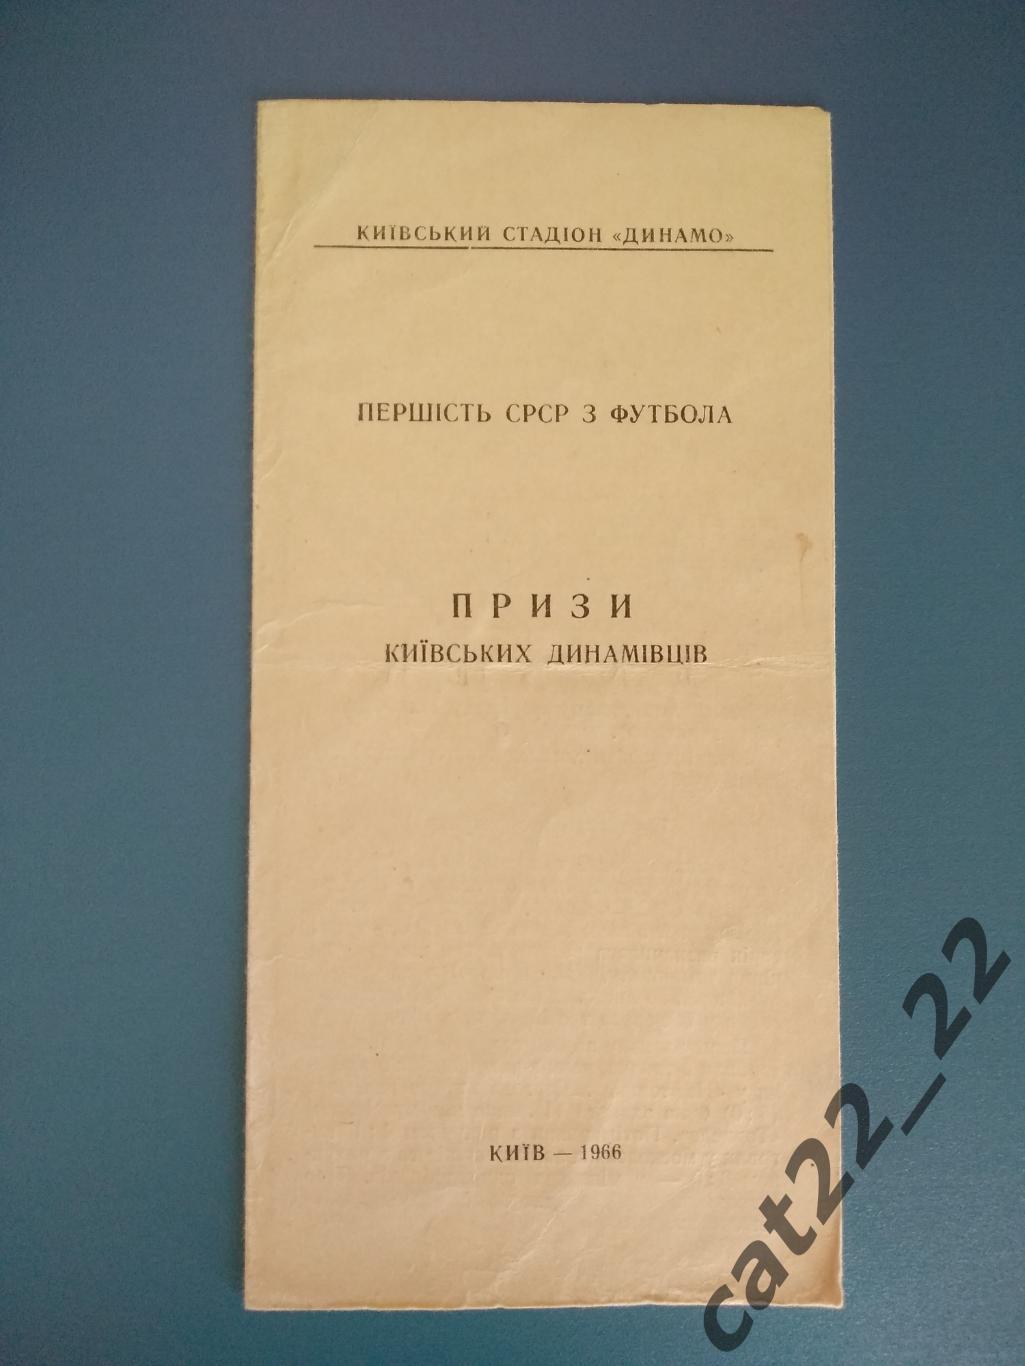 Буклет: Динамо Киев СССР 1966. Призы киевских динамовцев